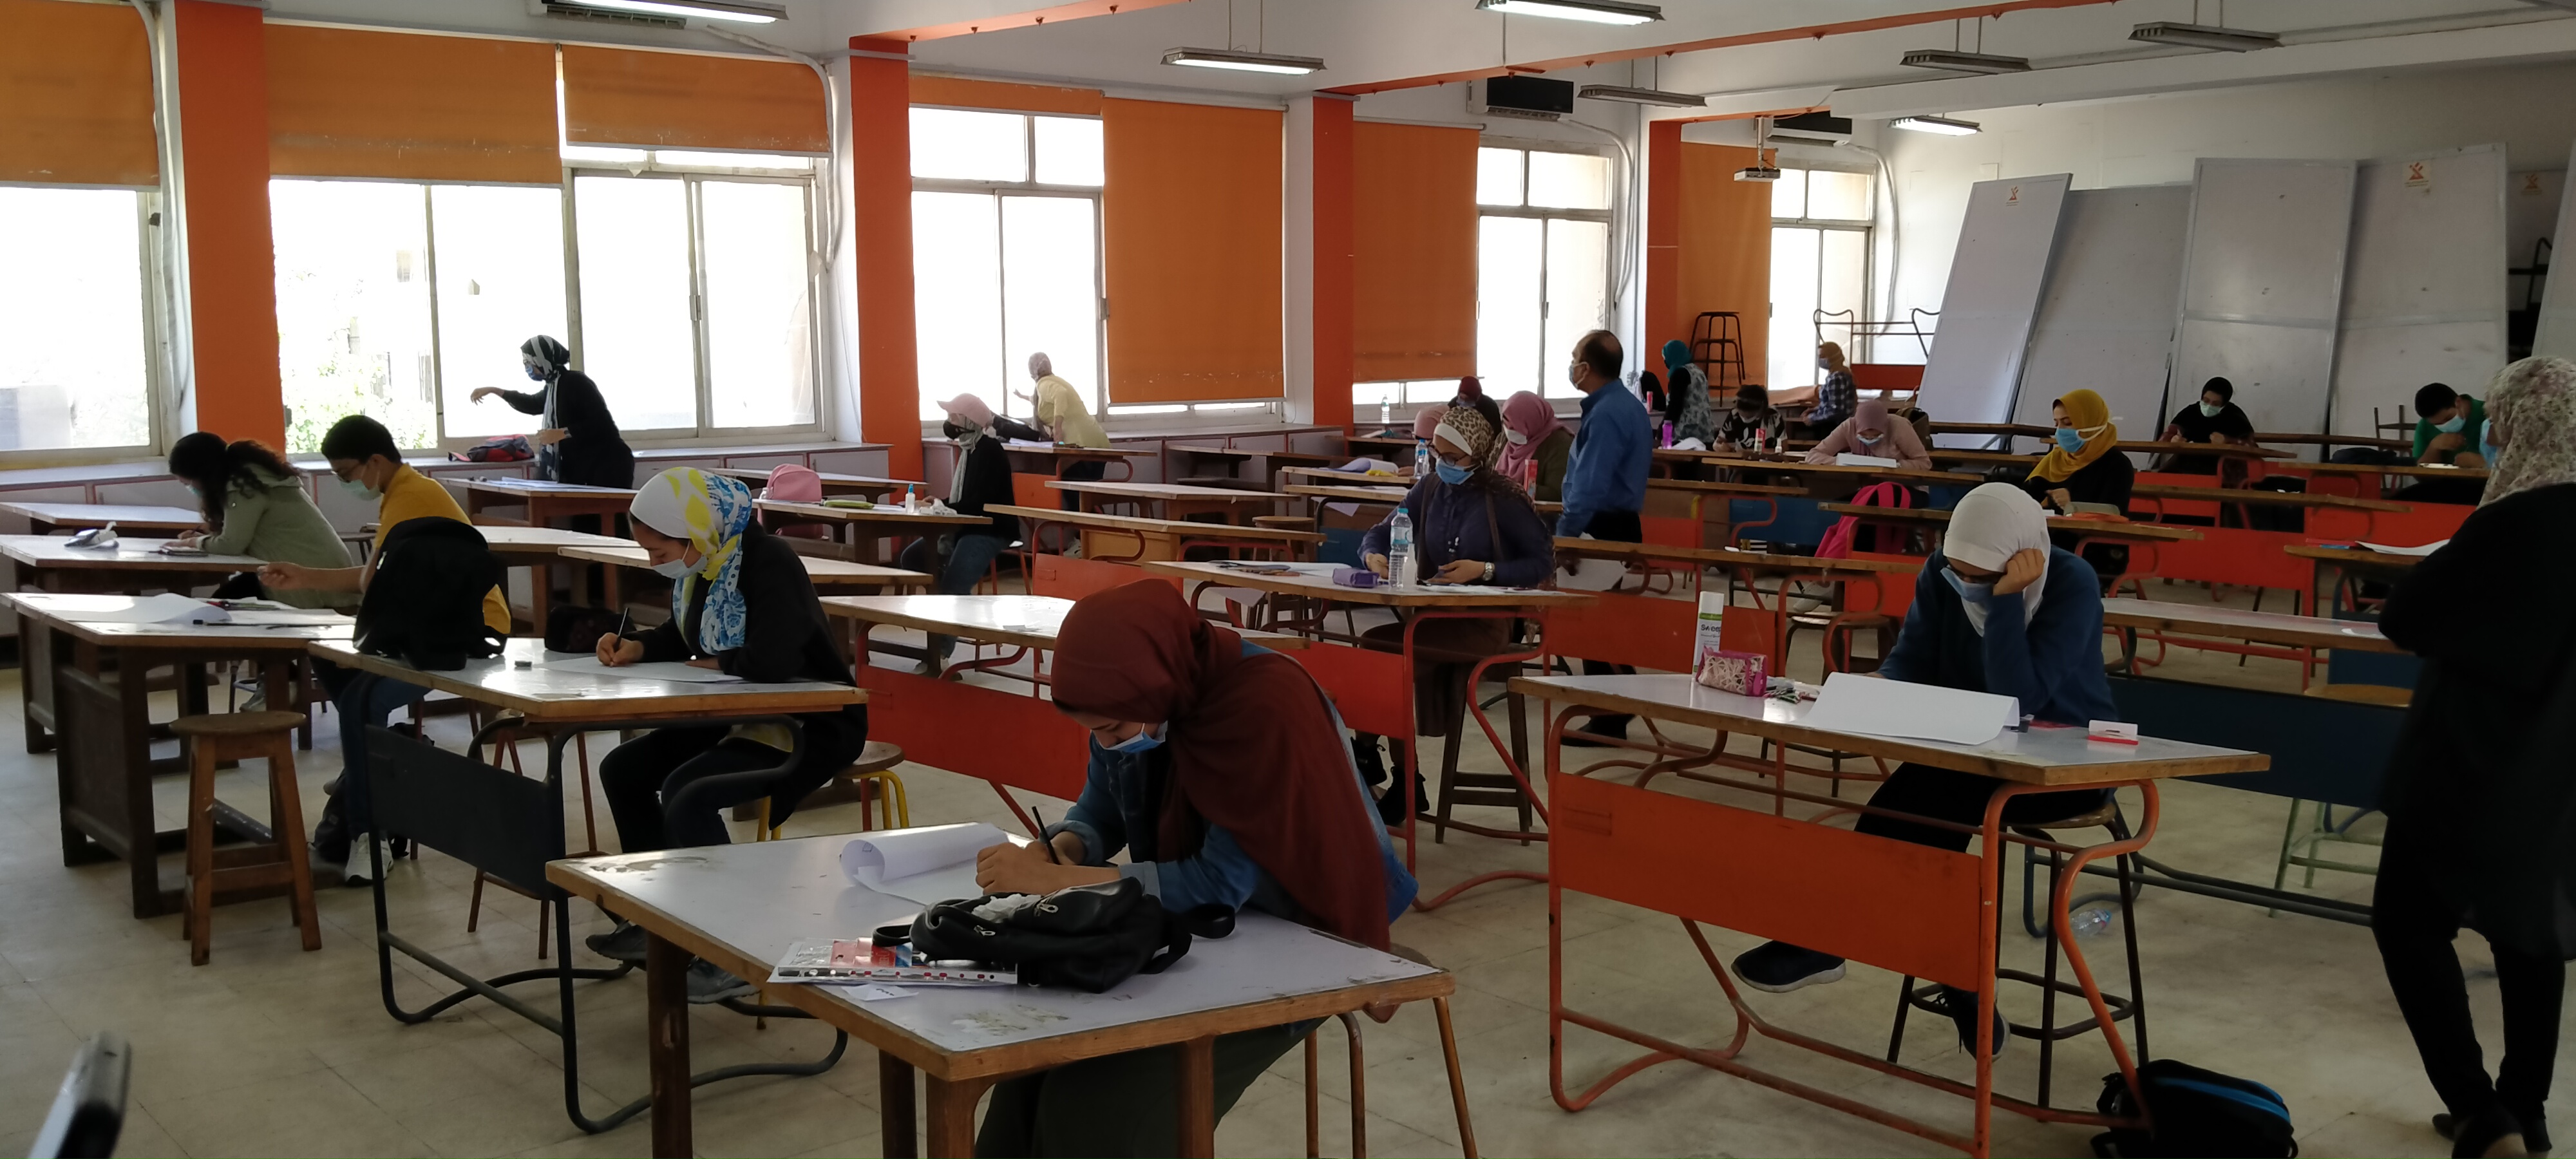 اختبارات القدرات بكلية الفنون التطبيقية جامعة حلوان  (11)